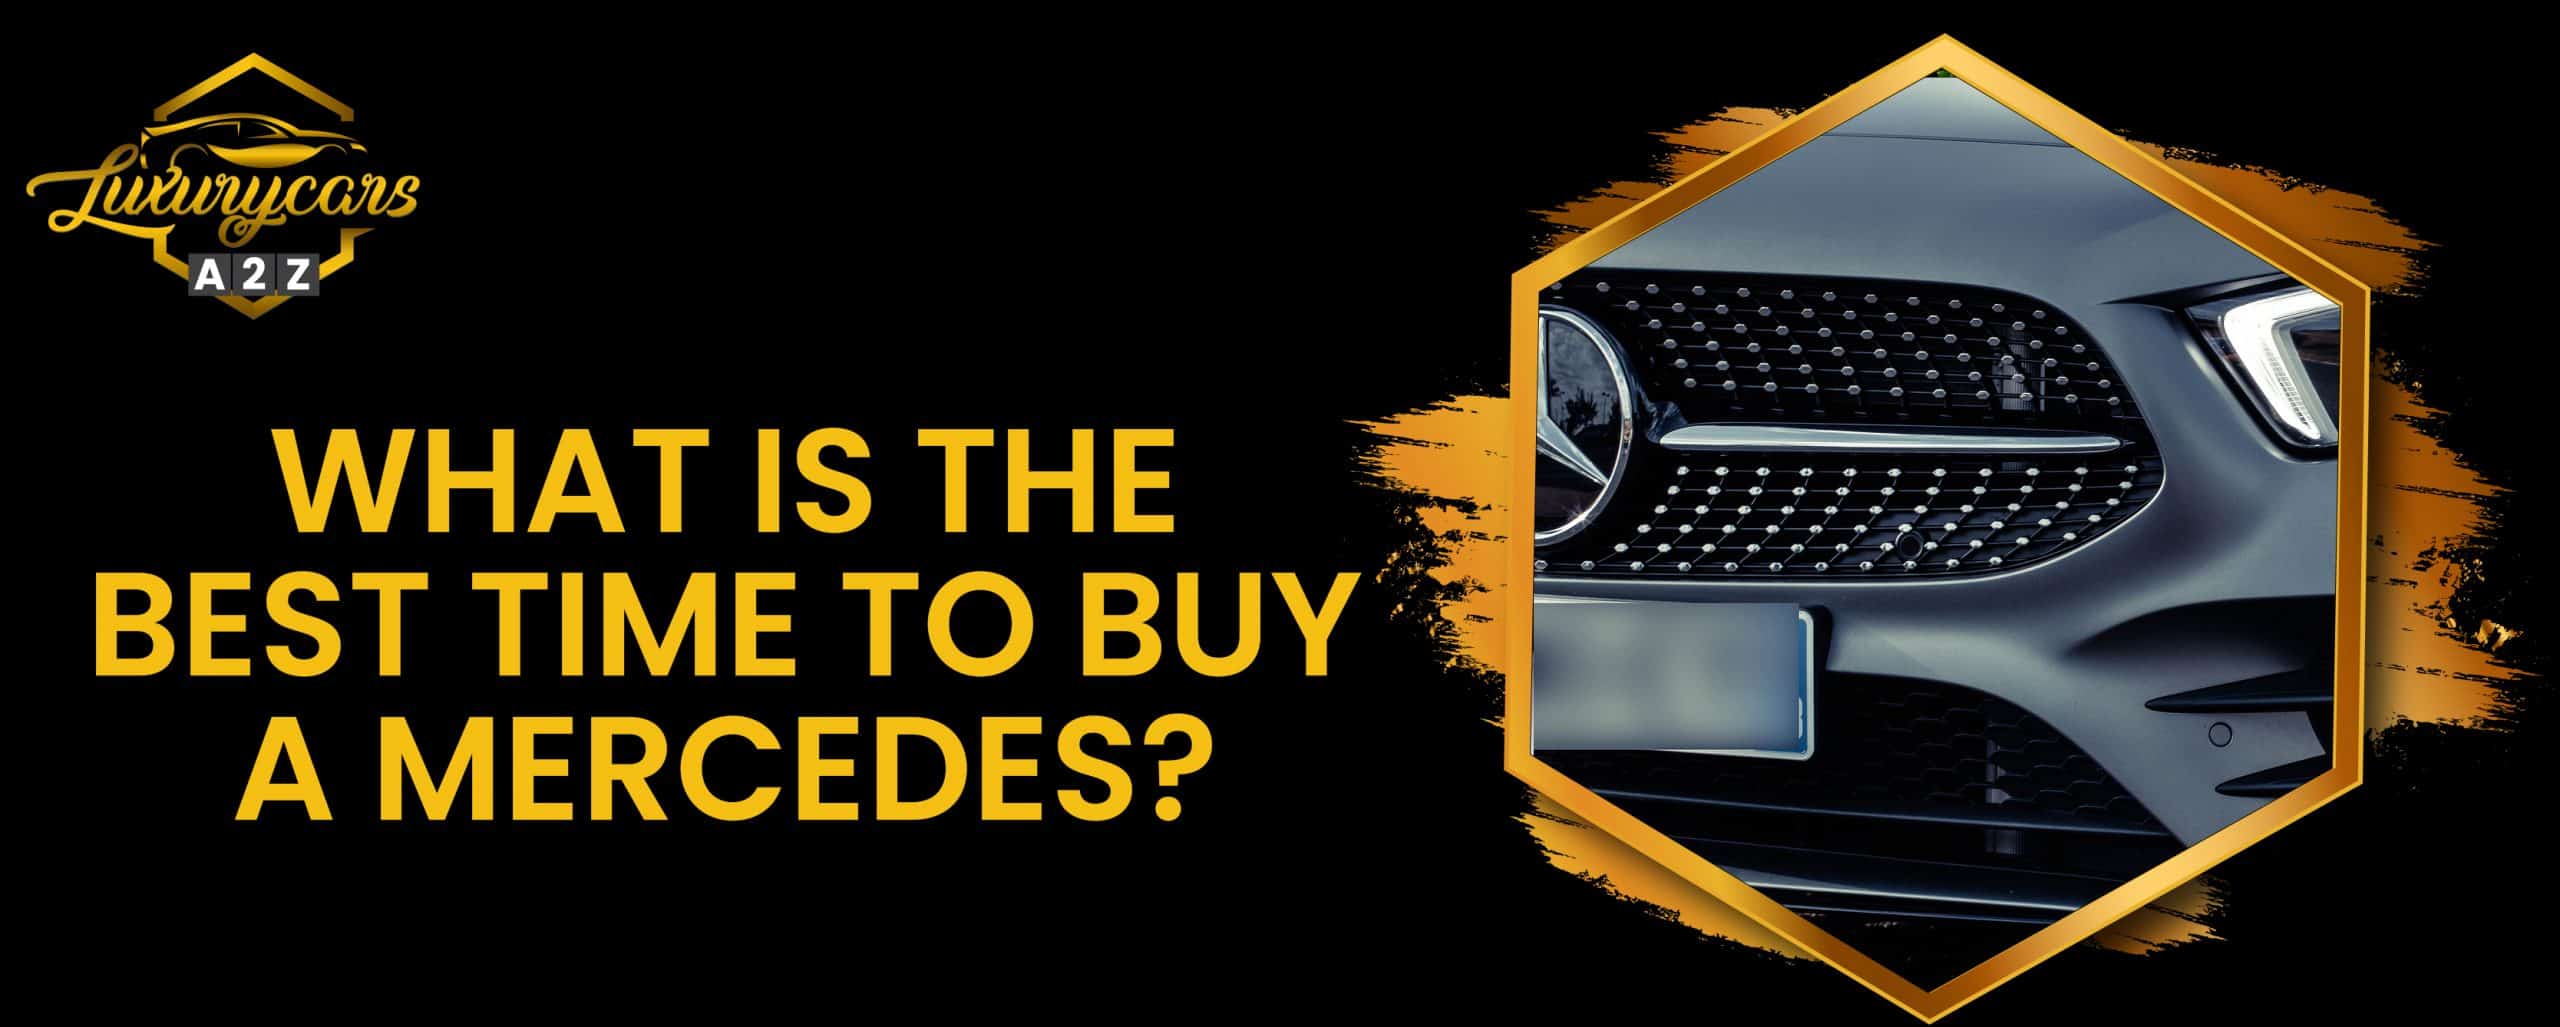 Quel est le meilleur moment pour acheter une Mercedes ?